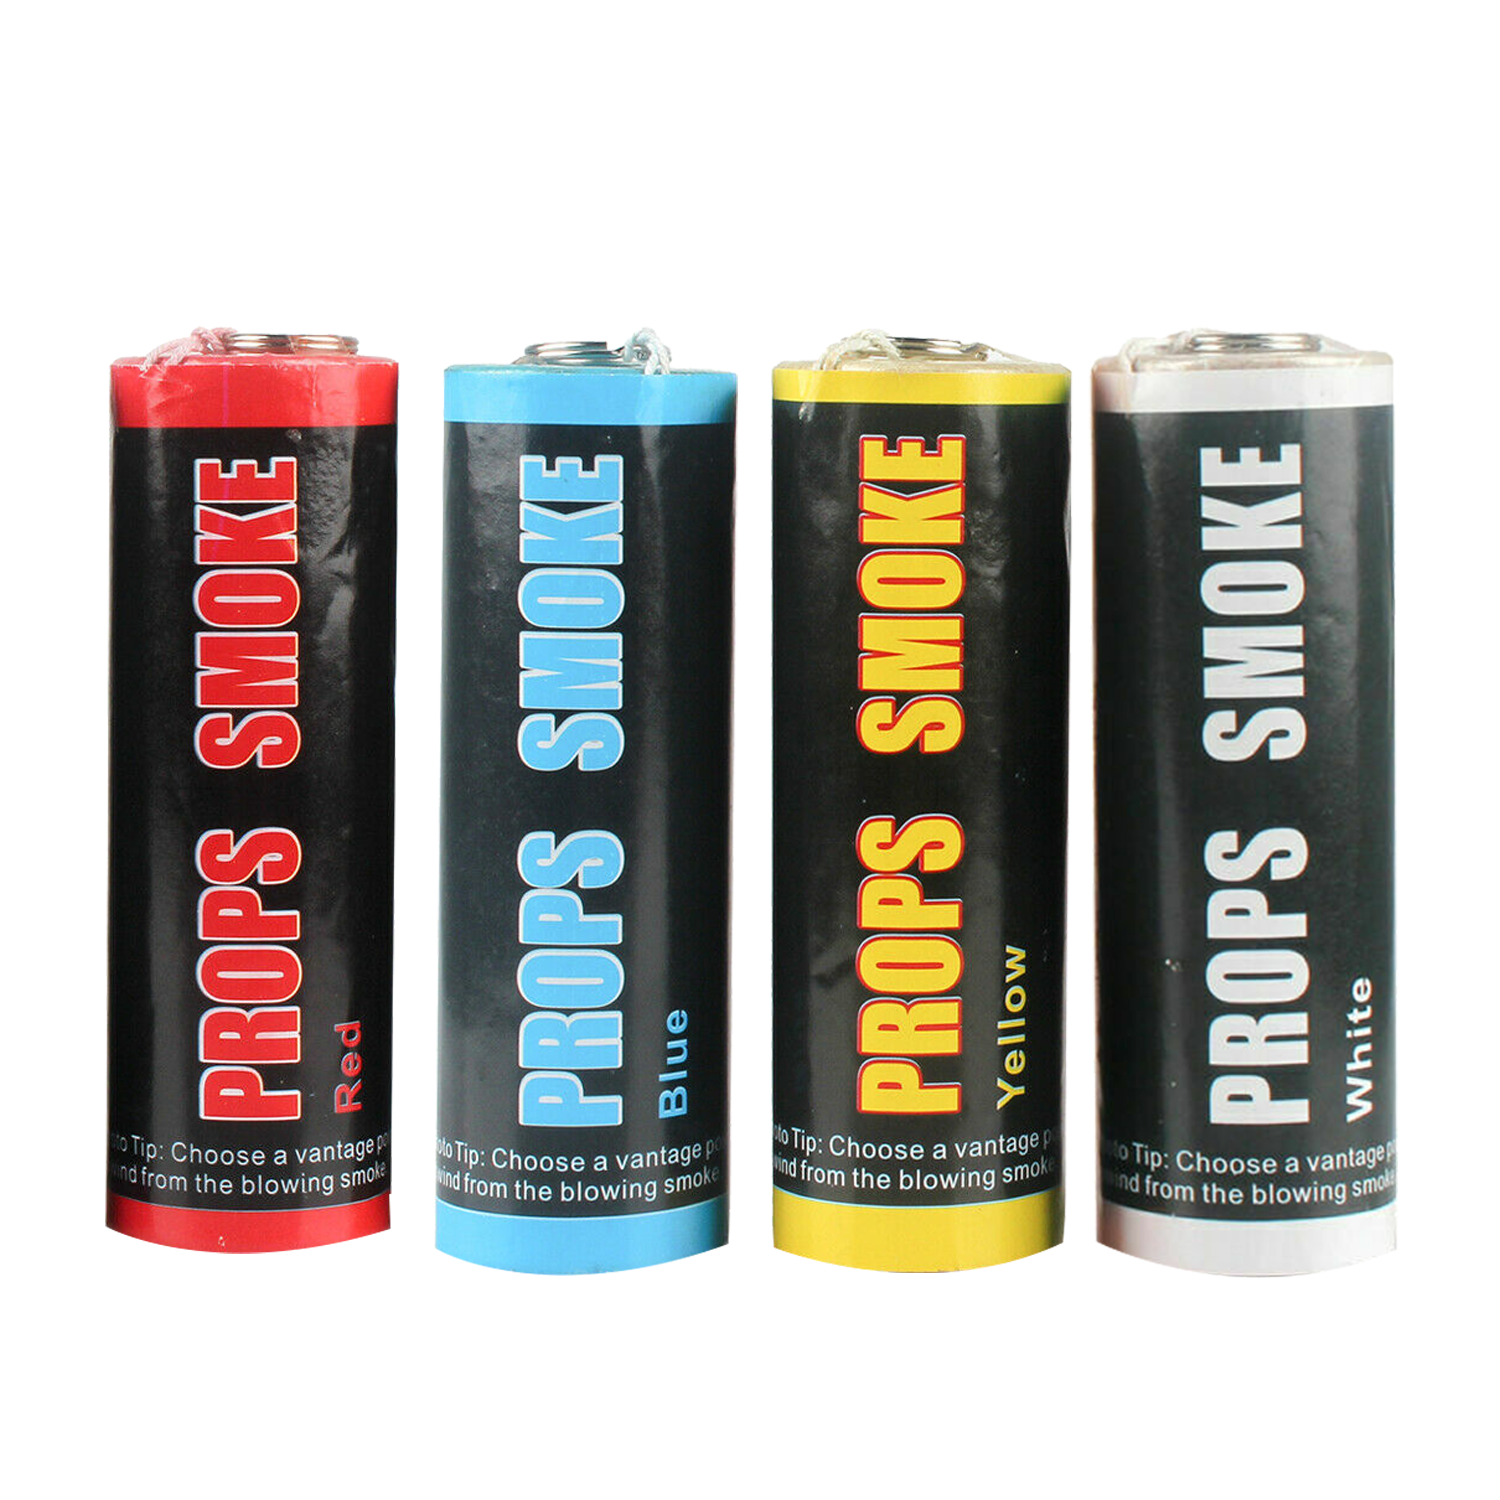 Bombas de humo / variedad de colores – TechCam Comercial